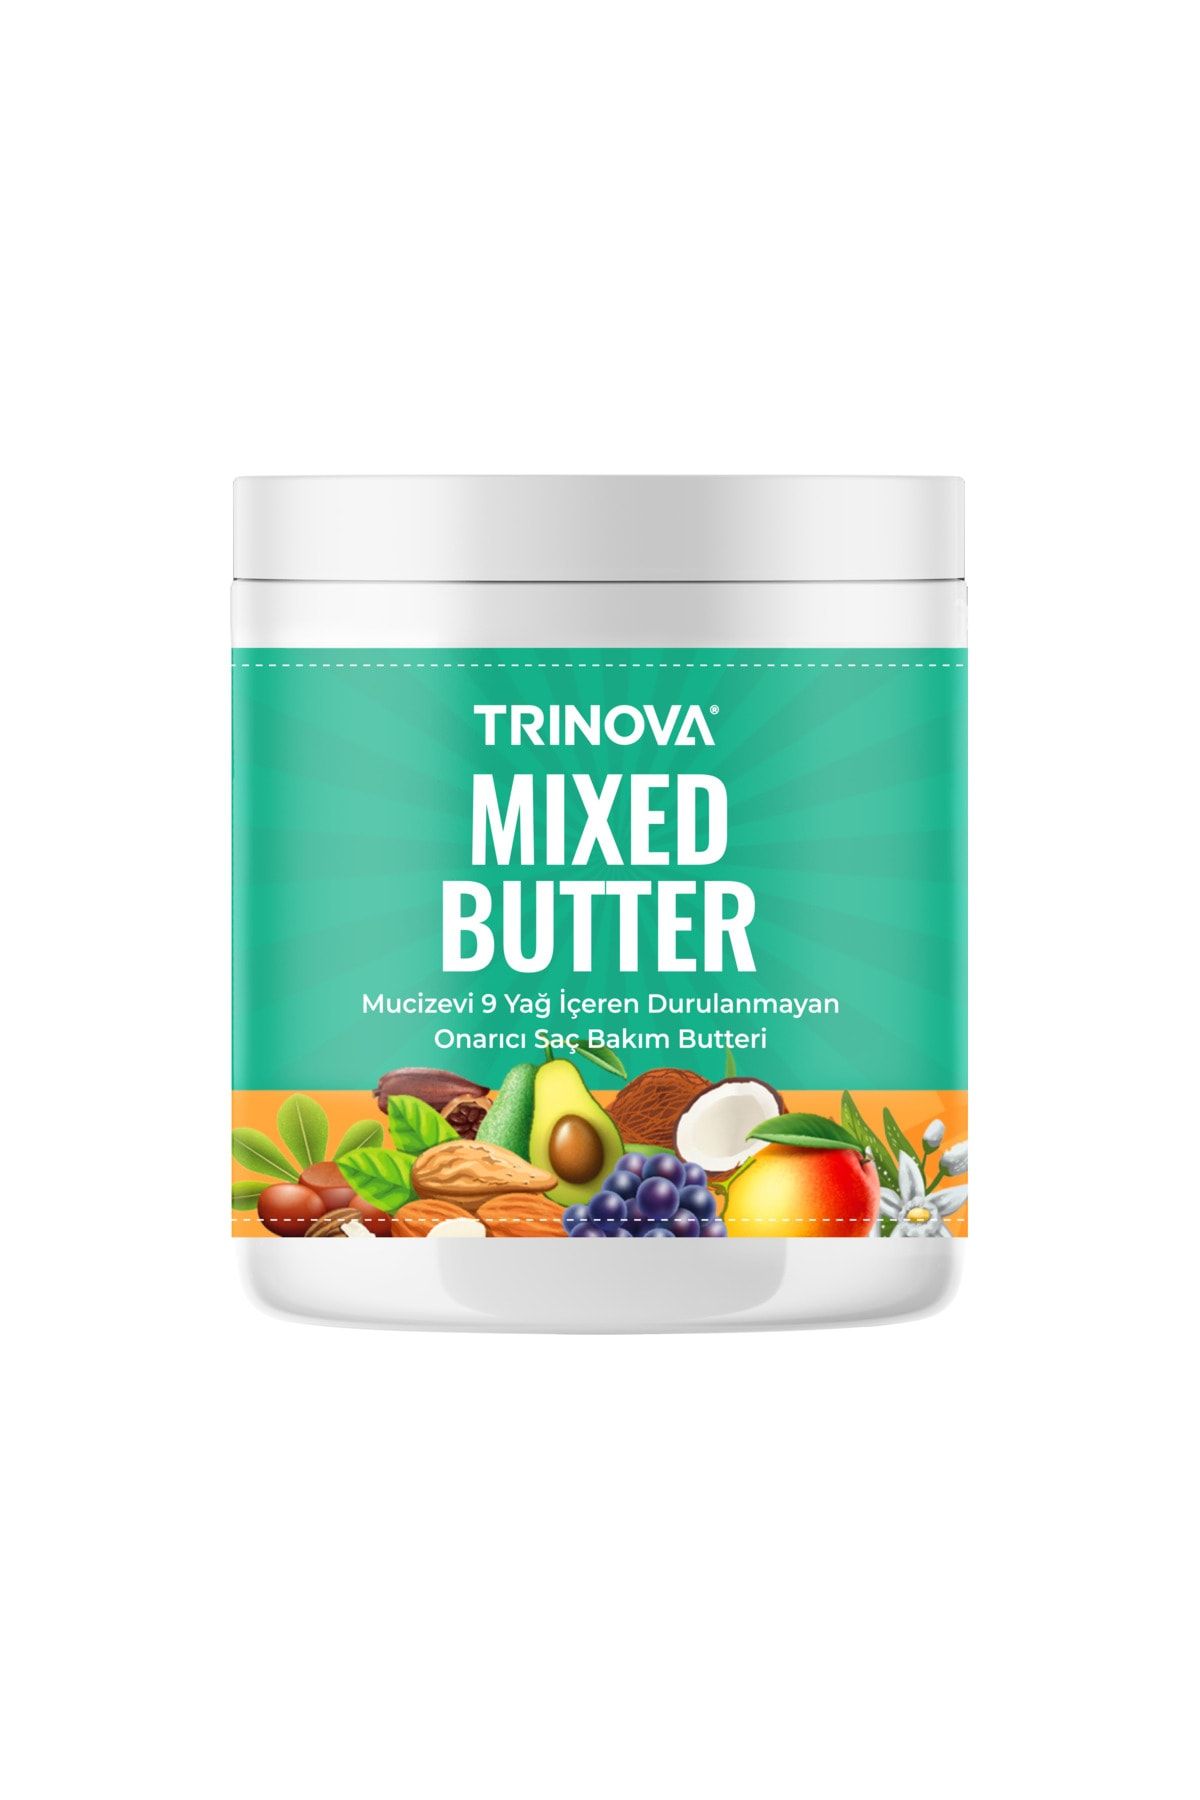 Trinova Saç Bakım Butter Saç Besleyici Ve Güçlendirici Saç Maskesi 300 ml